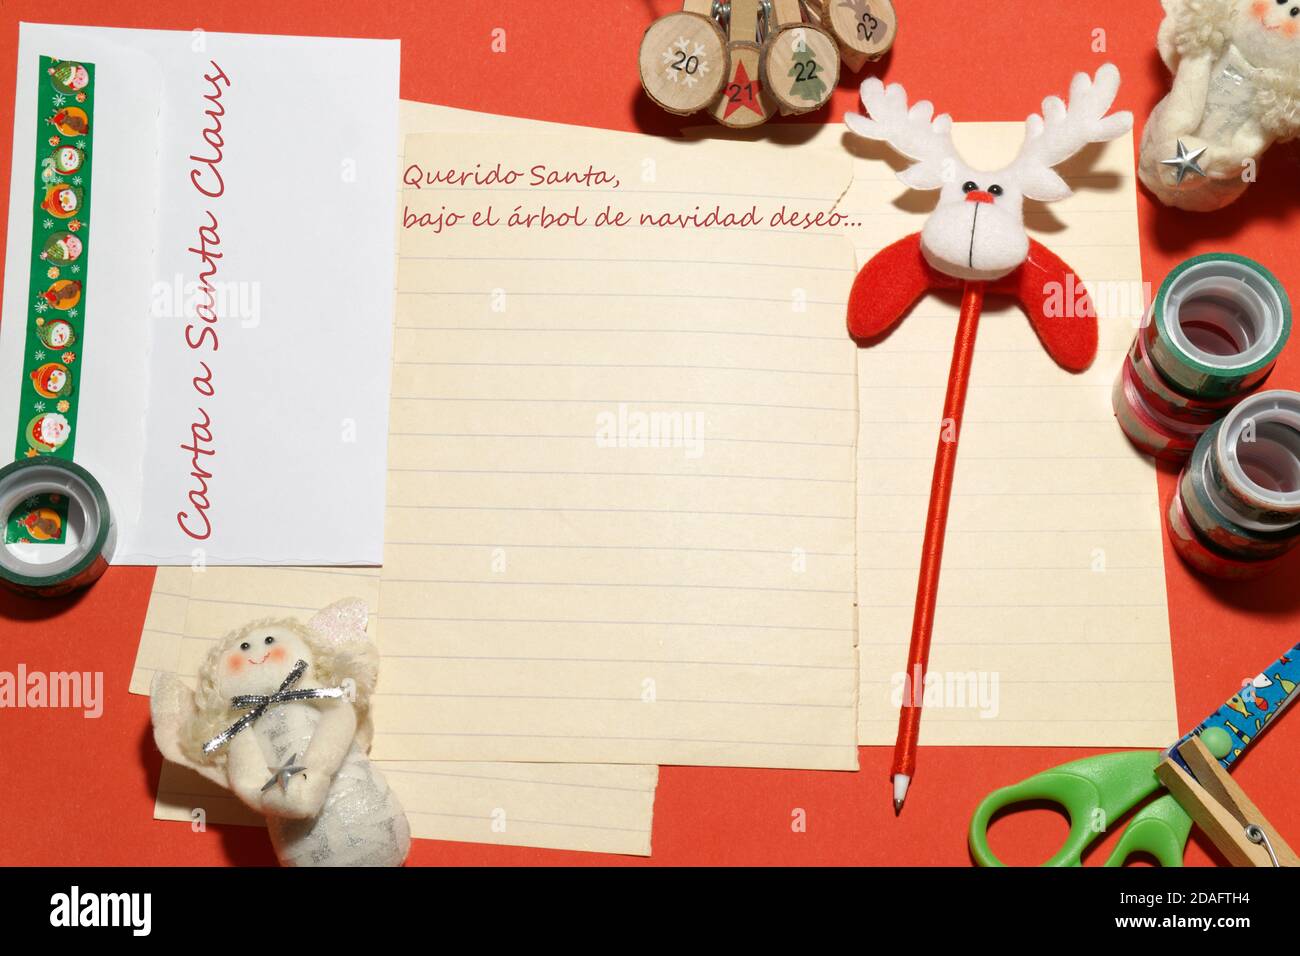 Brief, Grußkarte an den Weihnachtsmann auf Spanisch. Übersetzung des spanischen Textes ist: Brief an den Weihnachtsmann. Lieber Weihnachtsmann, unter dem Weihnachtsbaum wünsche ich mir... Stockfoto